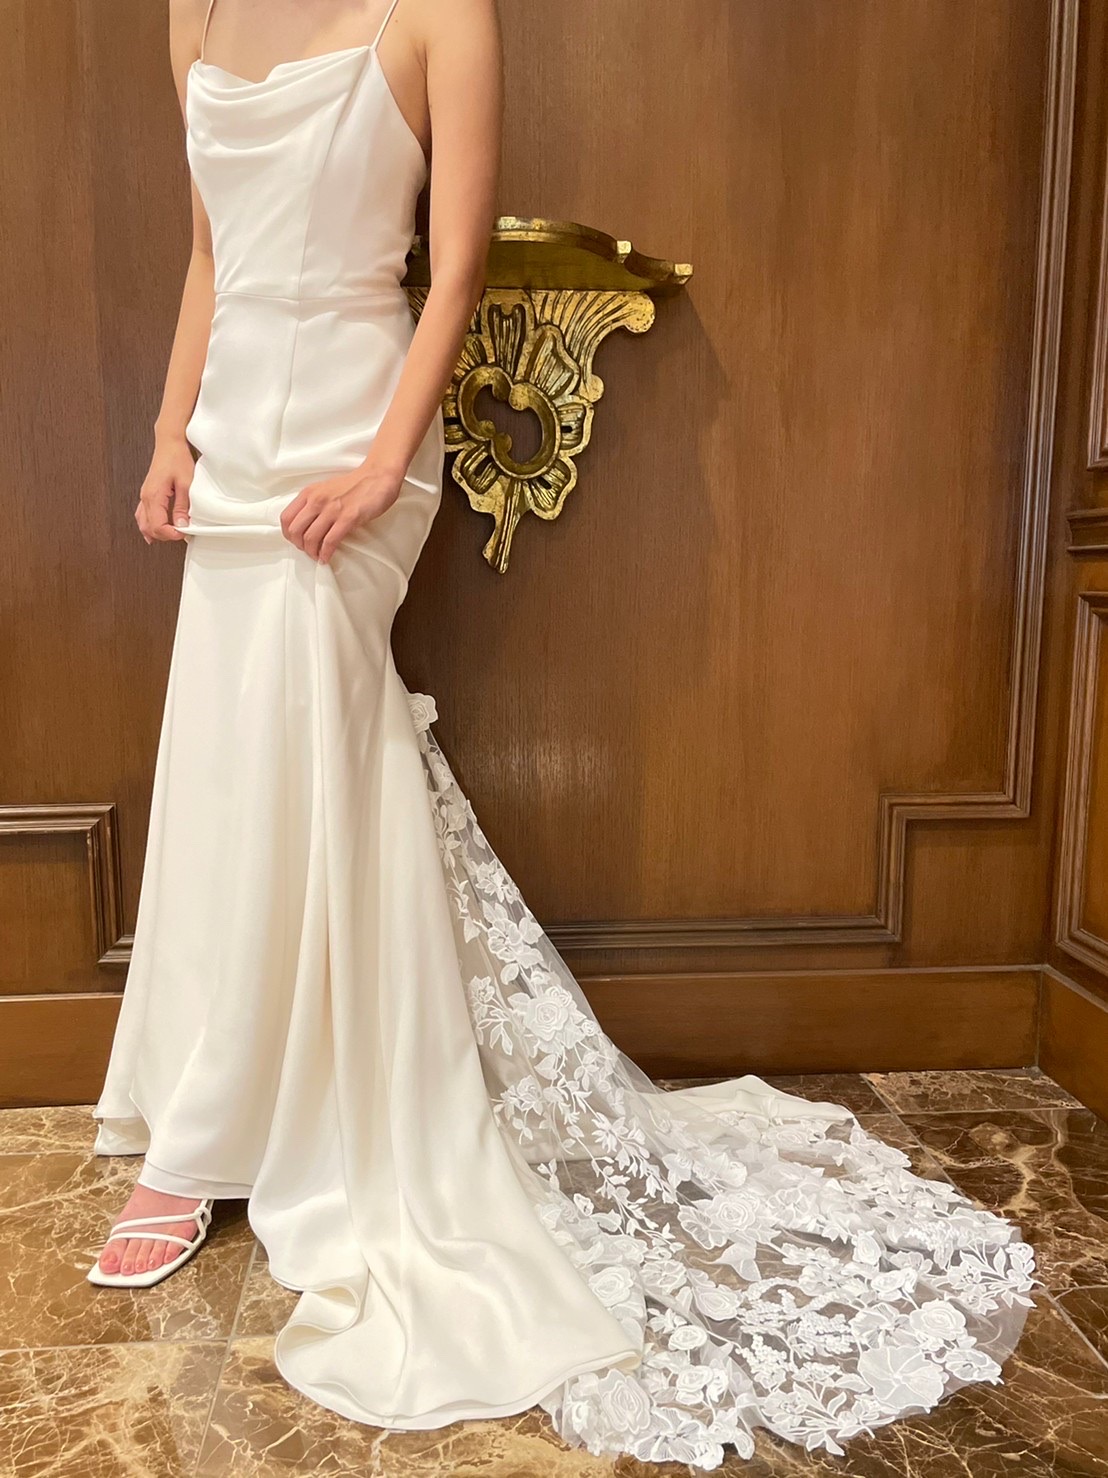 シンプルでカジュアルなクレープ素材のウェディングドレスはアットホームでおしゃれな結婚式や二次会前撮りにおすすめ